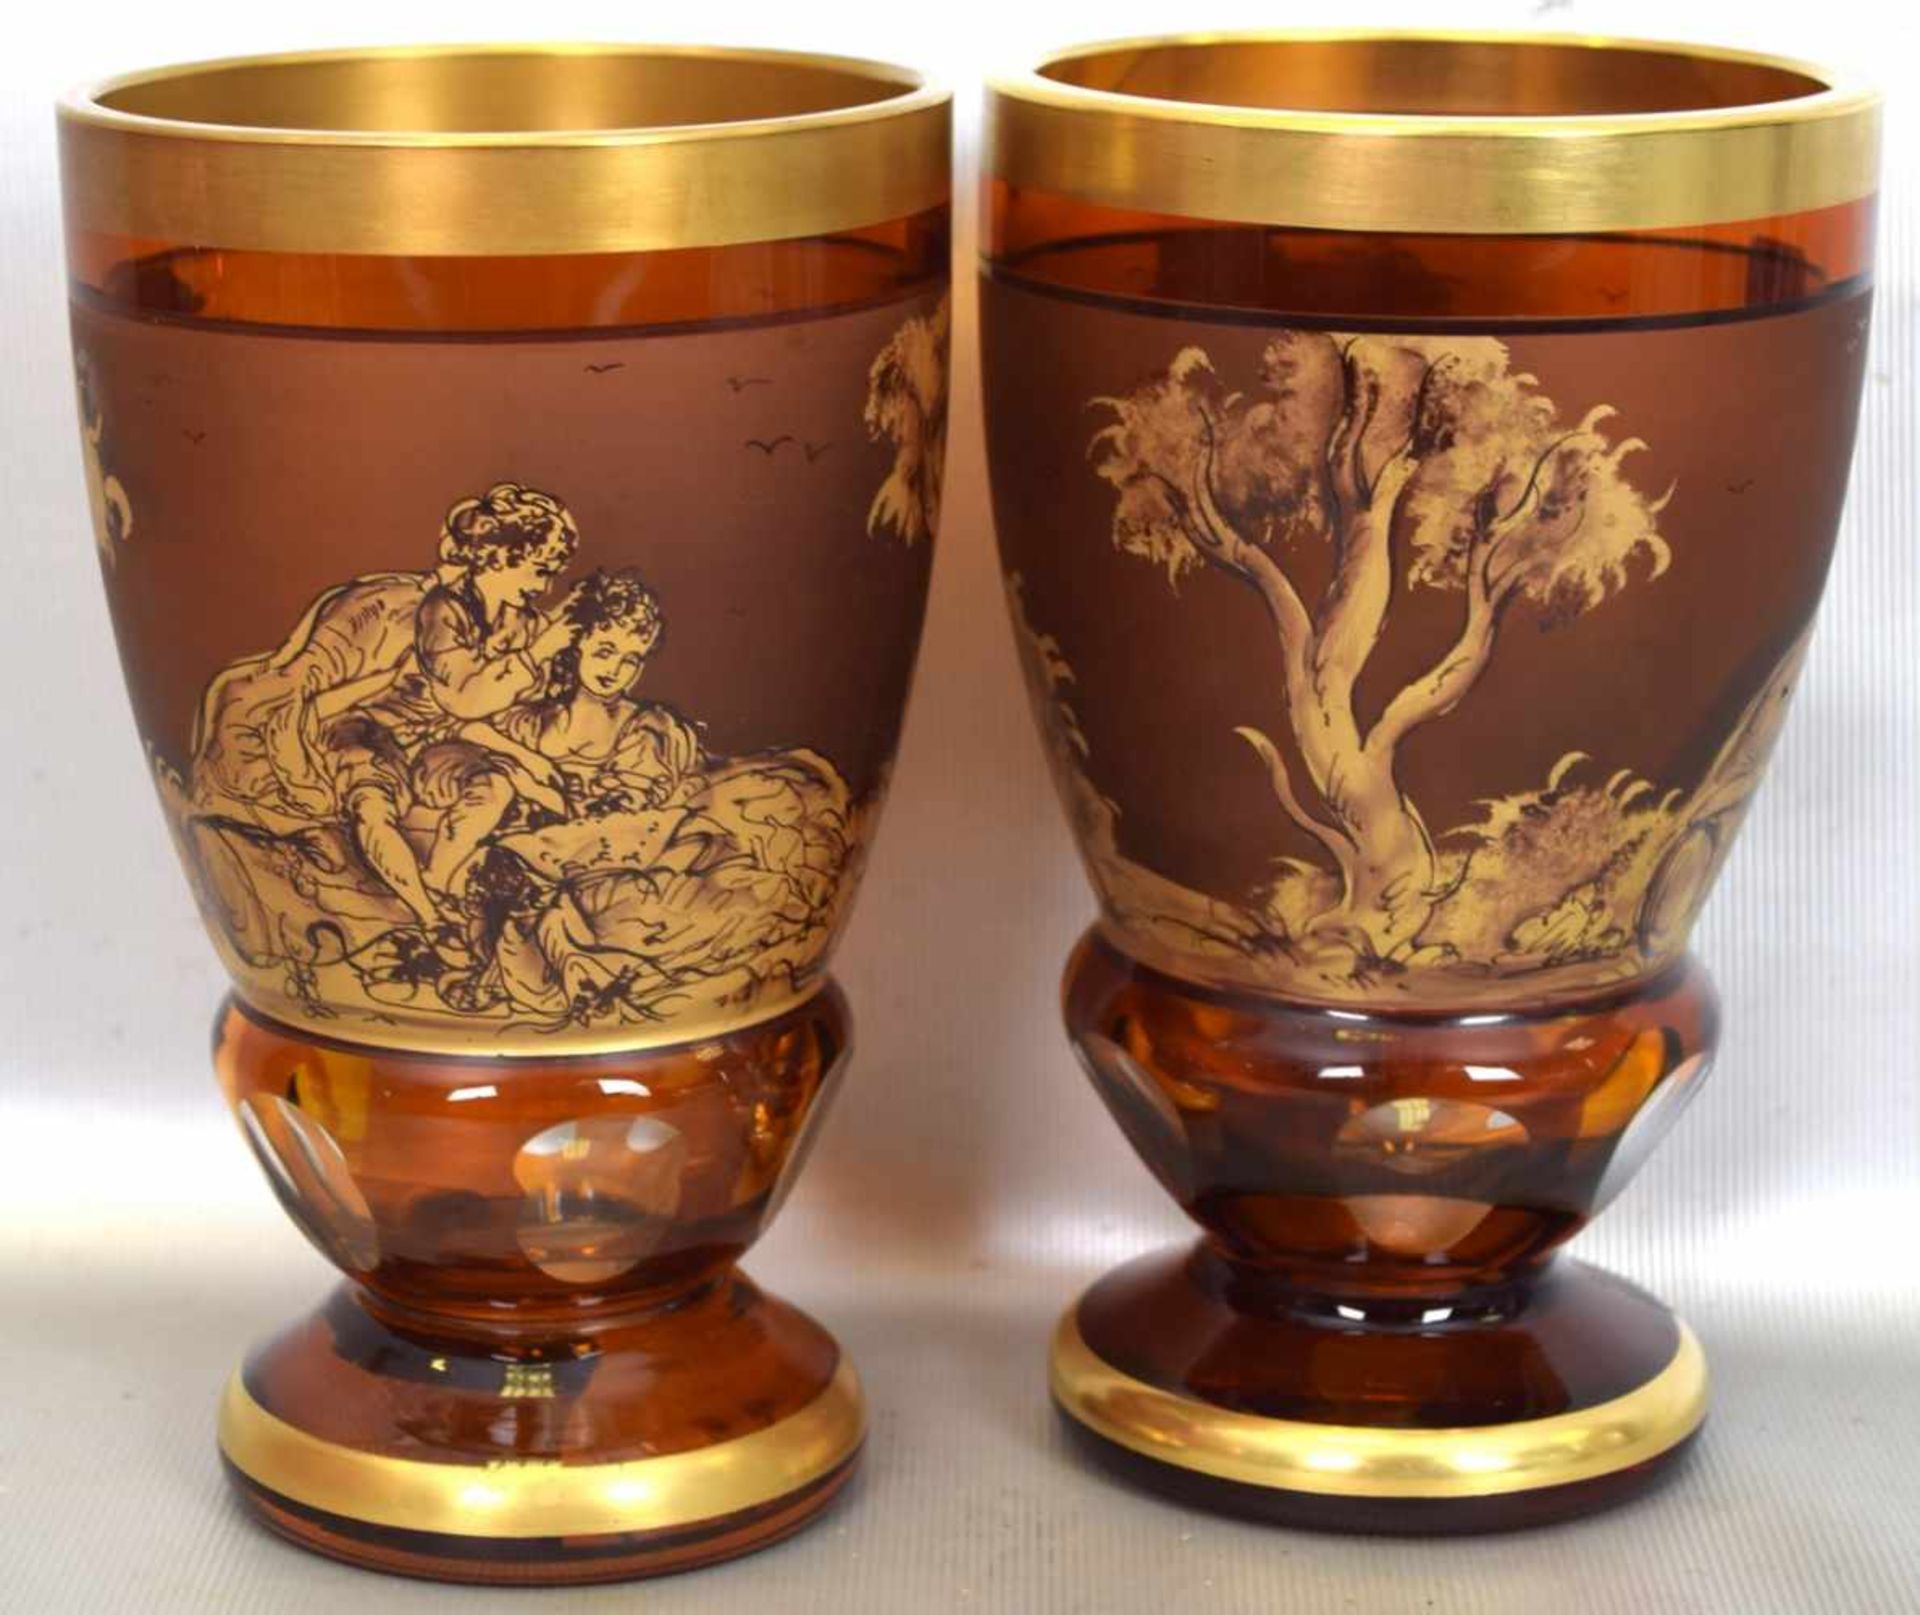 Zwei Becherbernsteinfarbenes Glas, Goldrand, Wandung mit goldenen Watteauszenen verziert, im